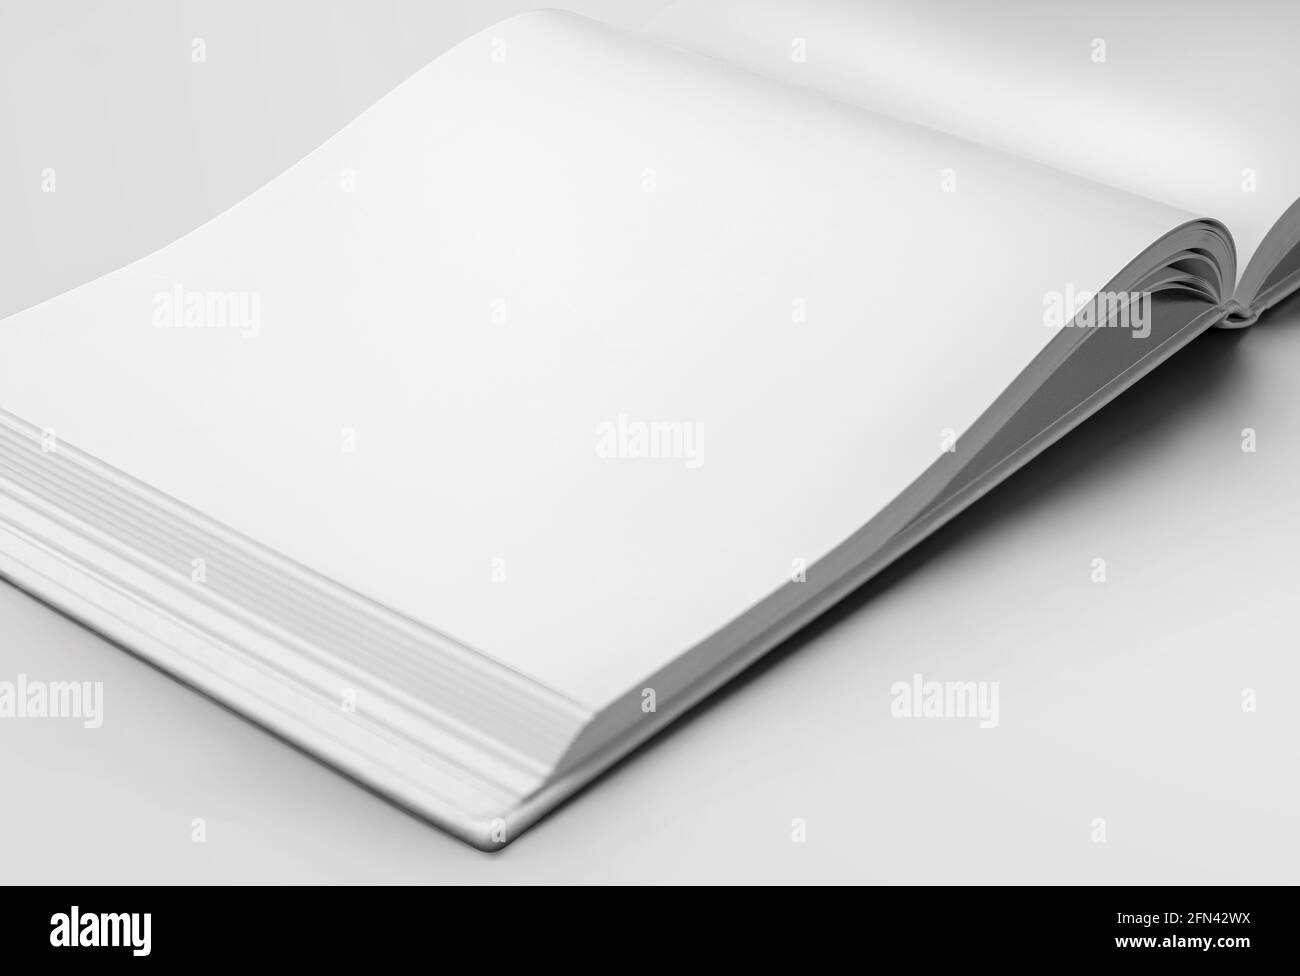 Nachbildung einer weißen leeren Seite eines Buches mit offener Ausrichtung im Landschaftsbild, mit realistischen Schatten, für die Designpräsentation. Hardcover liest Objektvorlage Stockfoto